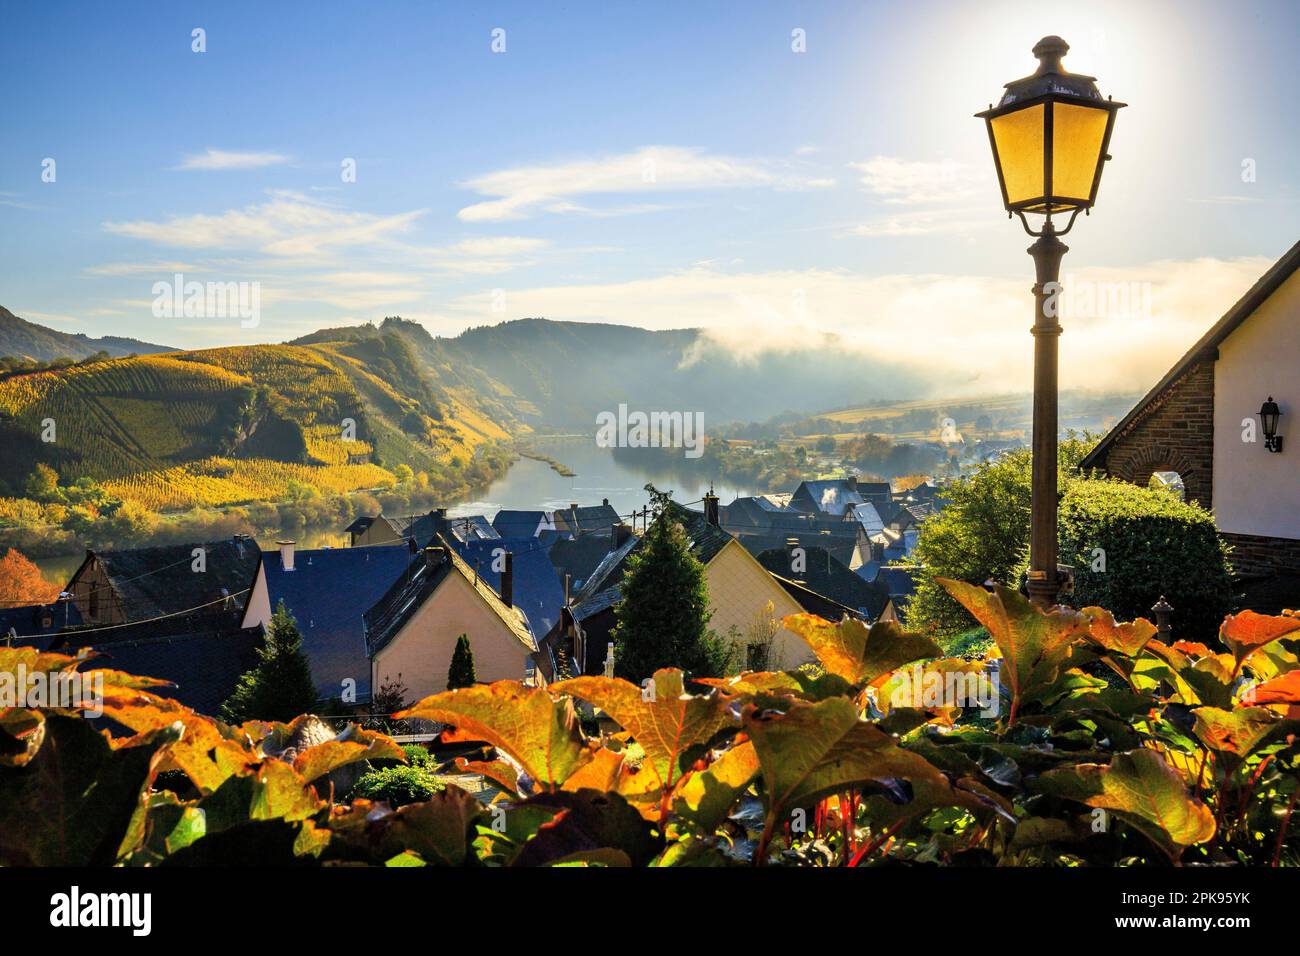 Traumhafter Sonnenaufgang über der Moselschleife bei Bremm. Herbstfoto der gelben Weinberge, wunderschönes Licht am Morgen. Stockfoto